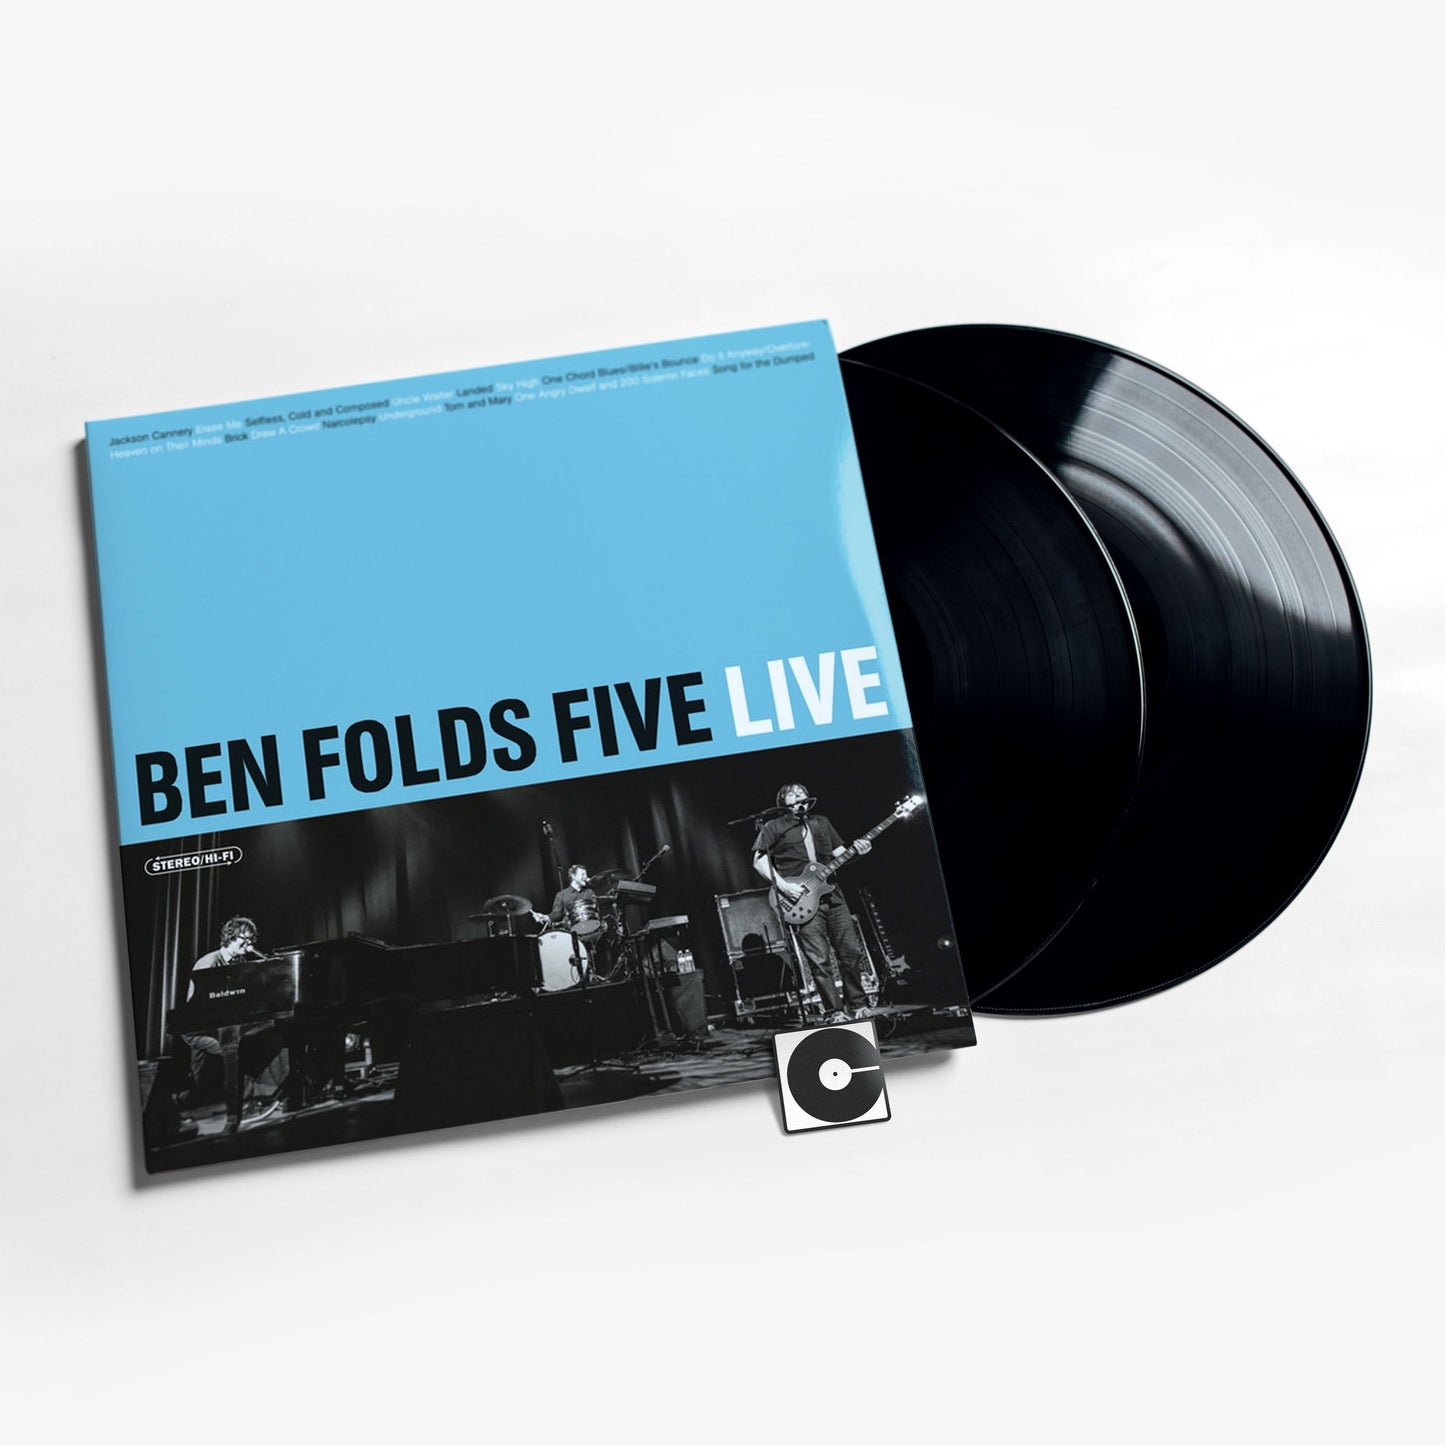 Ben Folds Five ‎- "Ben Folds Five Live"